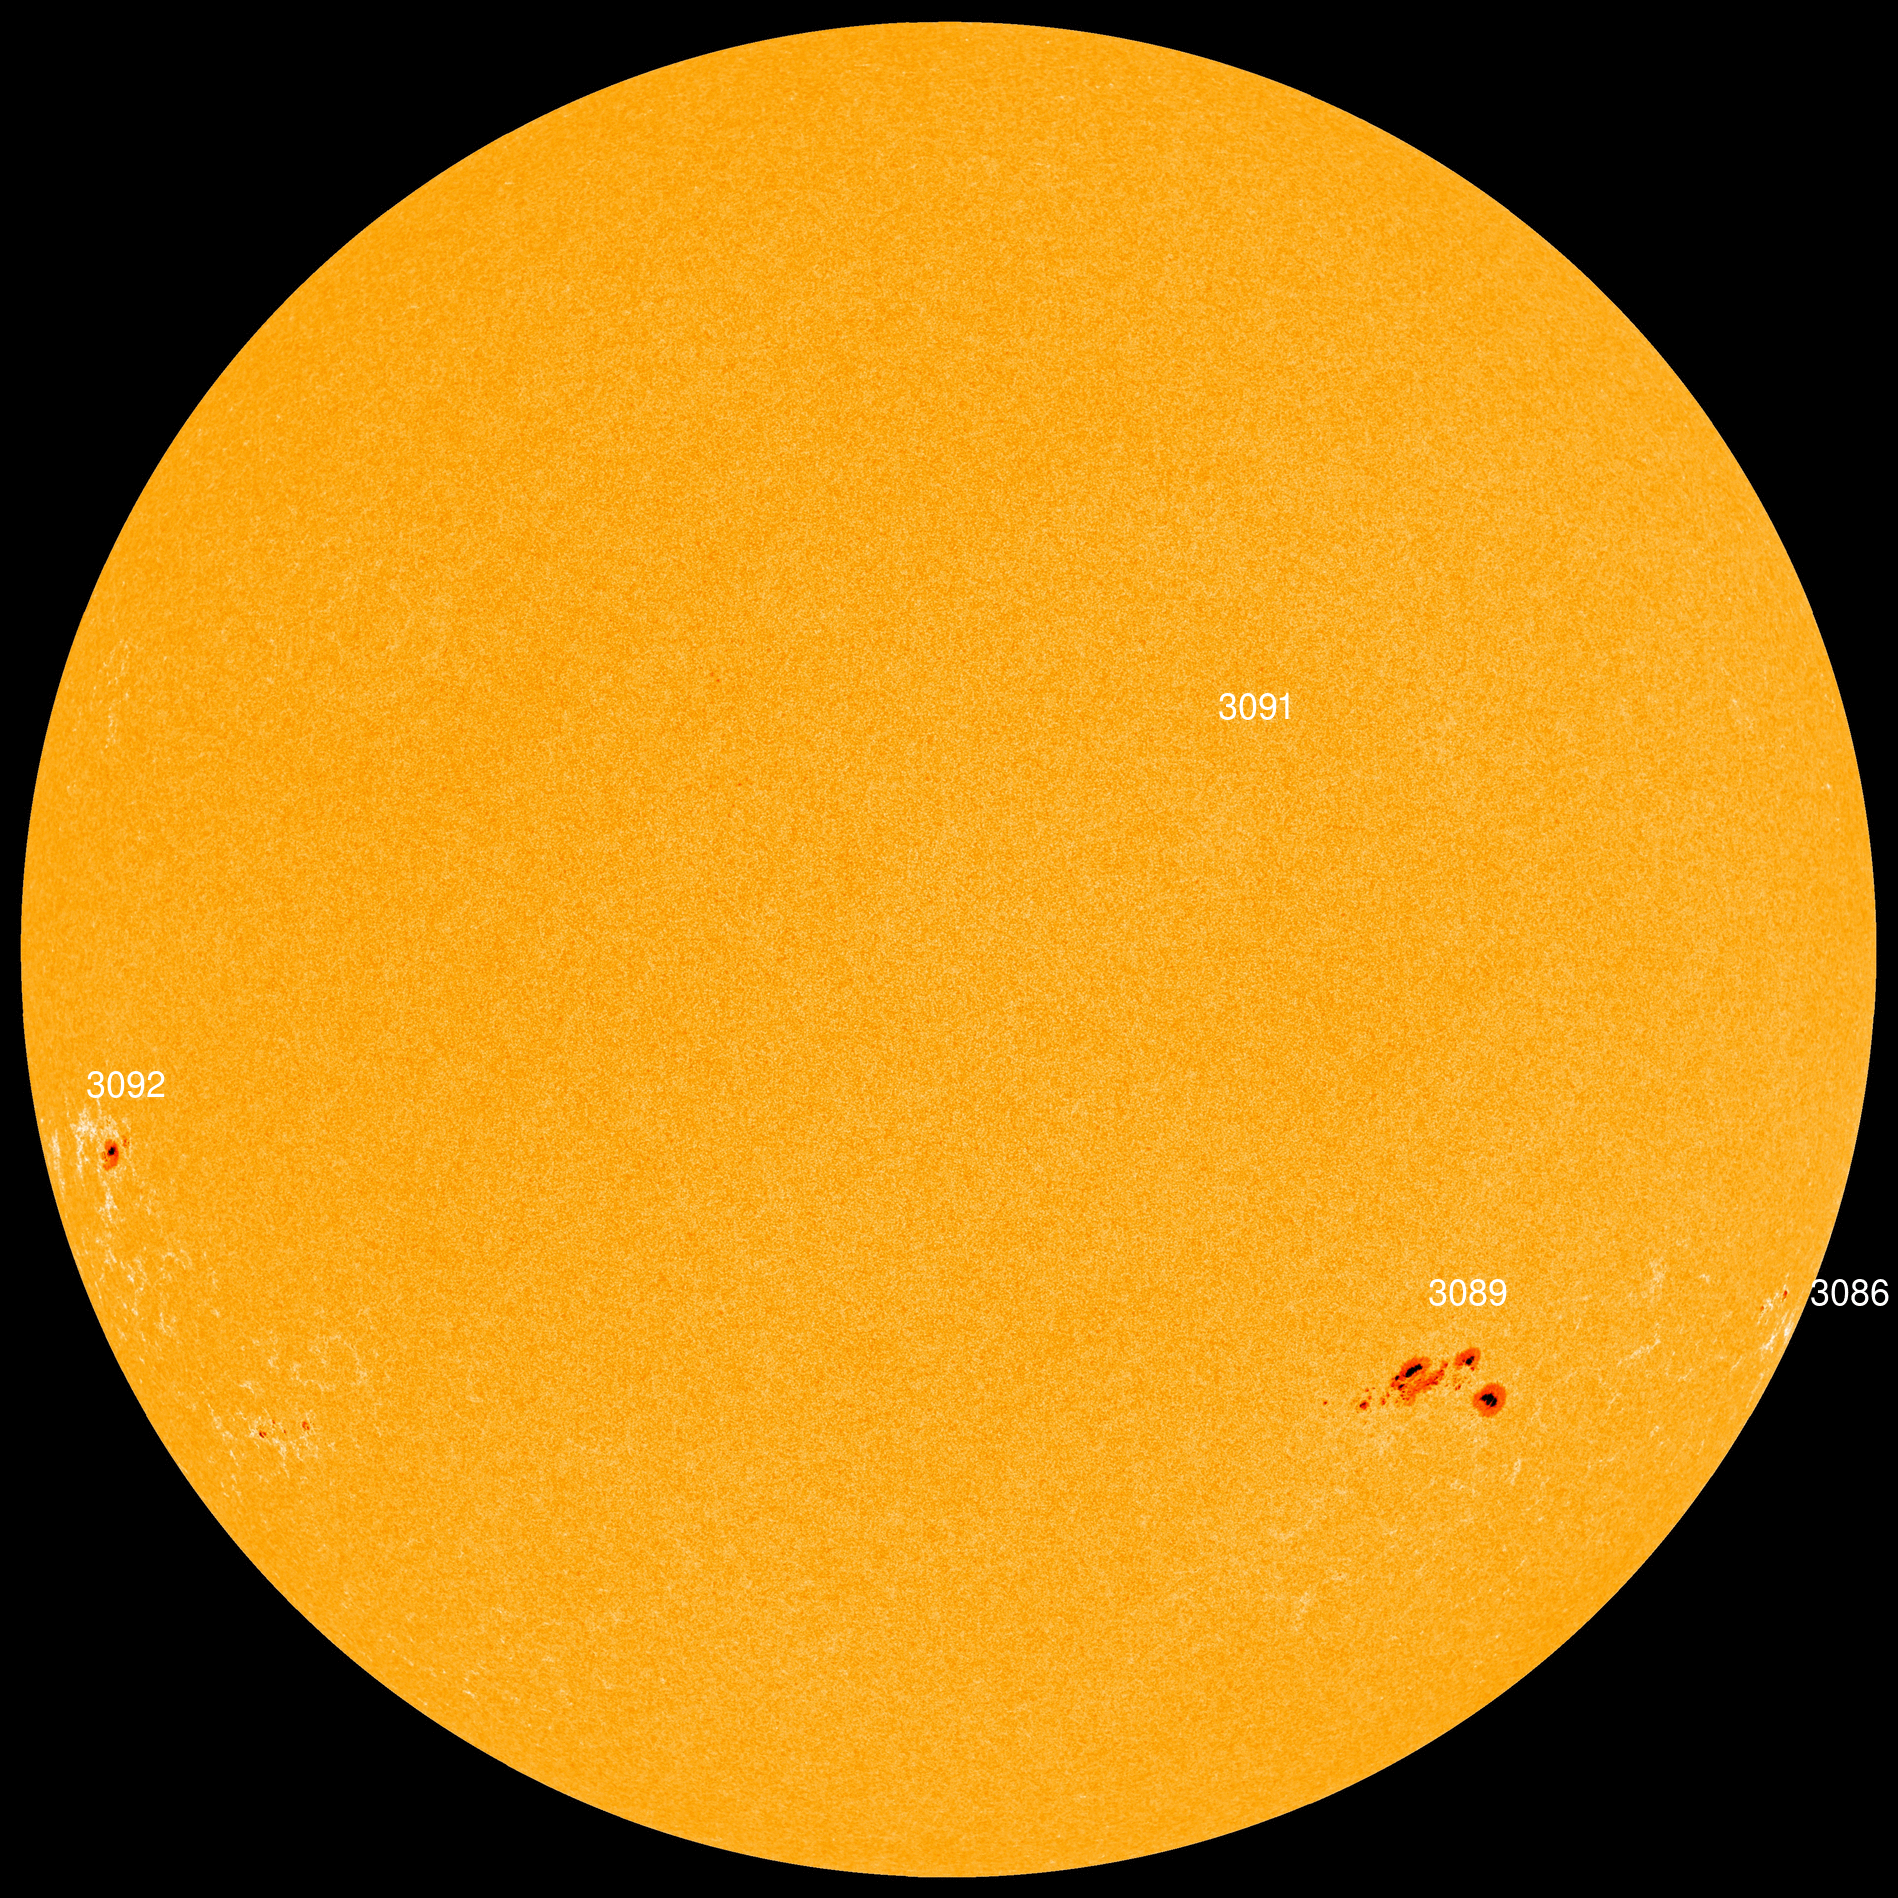 Солнечные вспышки X-класса могут генерироваться магнитным полем дельта-класса солнечного пятна AR3089. Кредит: SDO/HMI.